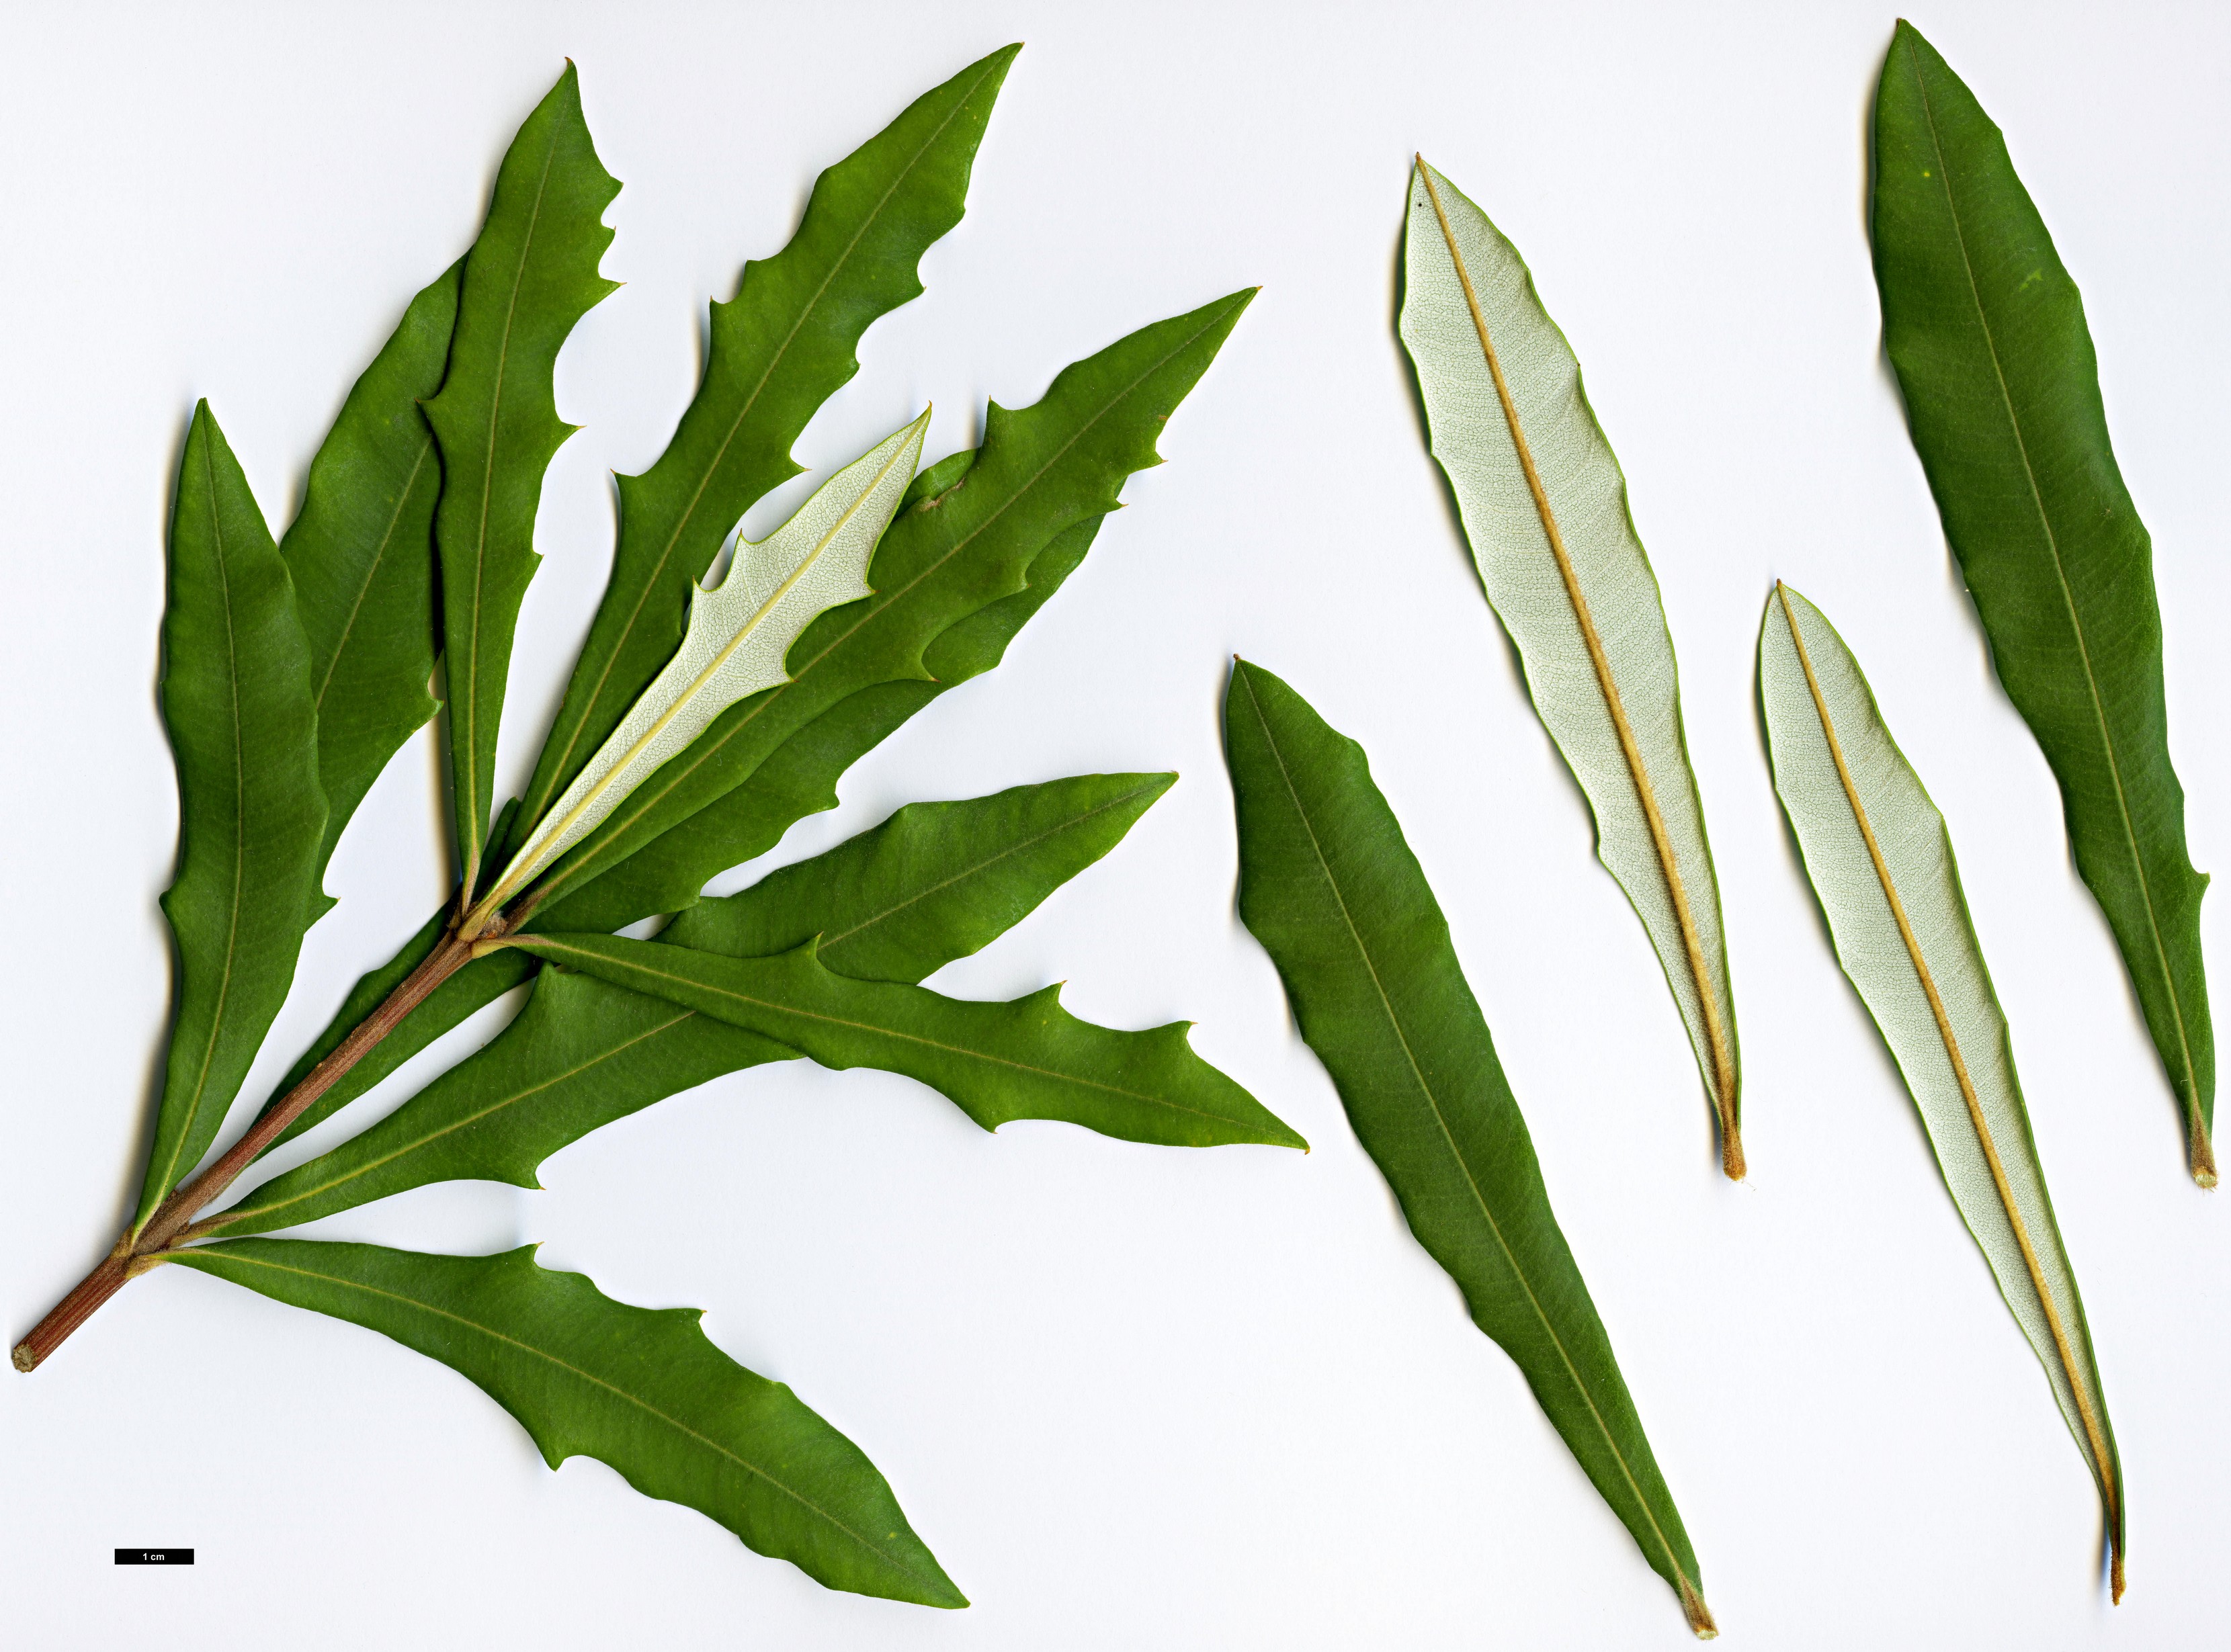 High resolution image: Family: Proteaceae - Genus: Banksia - Taxon: integrifolia - SpeciesSub: subsp. monticola